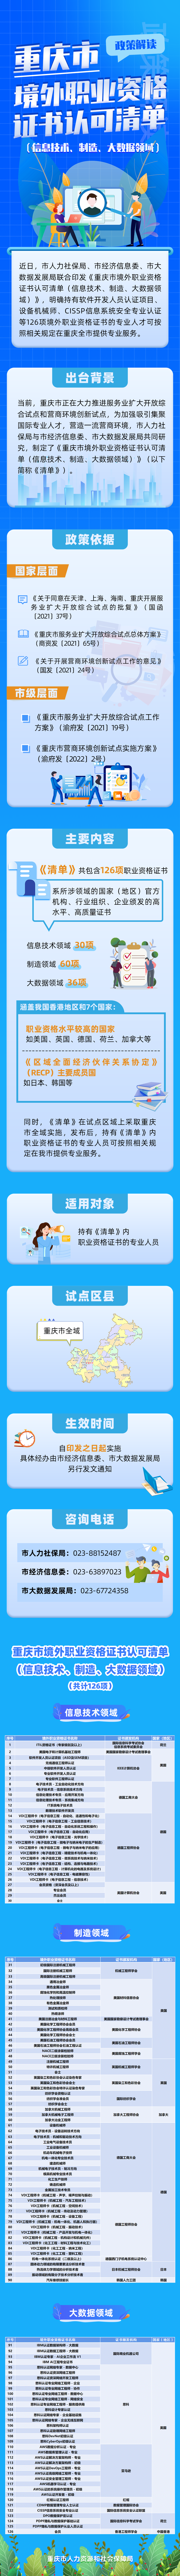 重庆市境外职业资格证书认可清单。重庆市人力社保局 供图